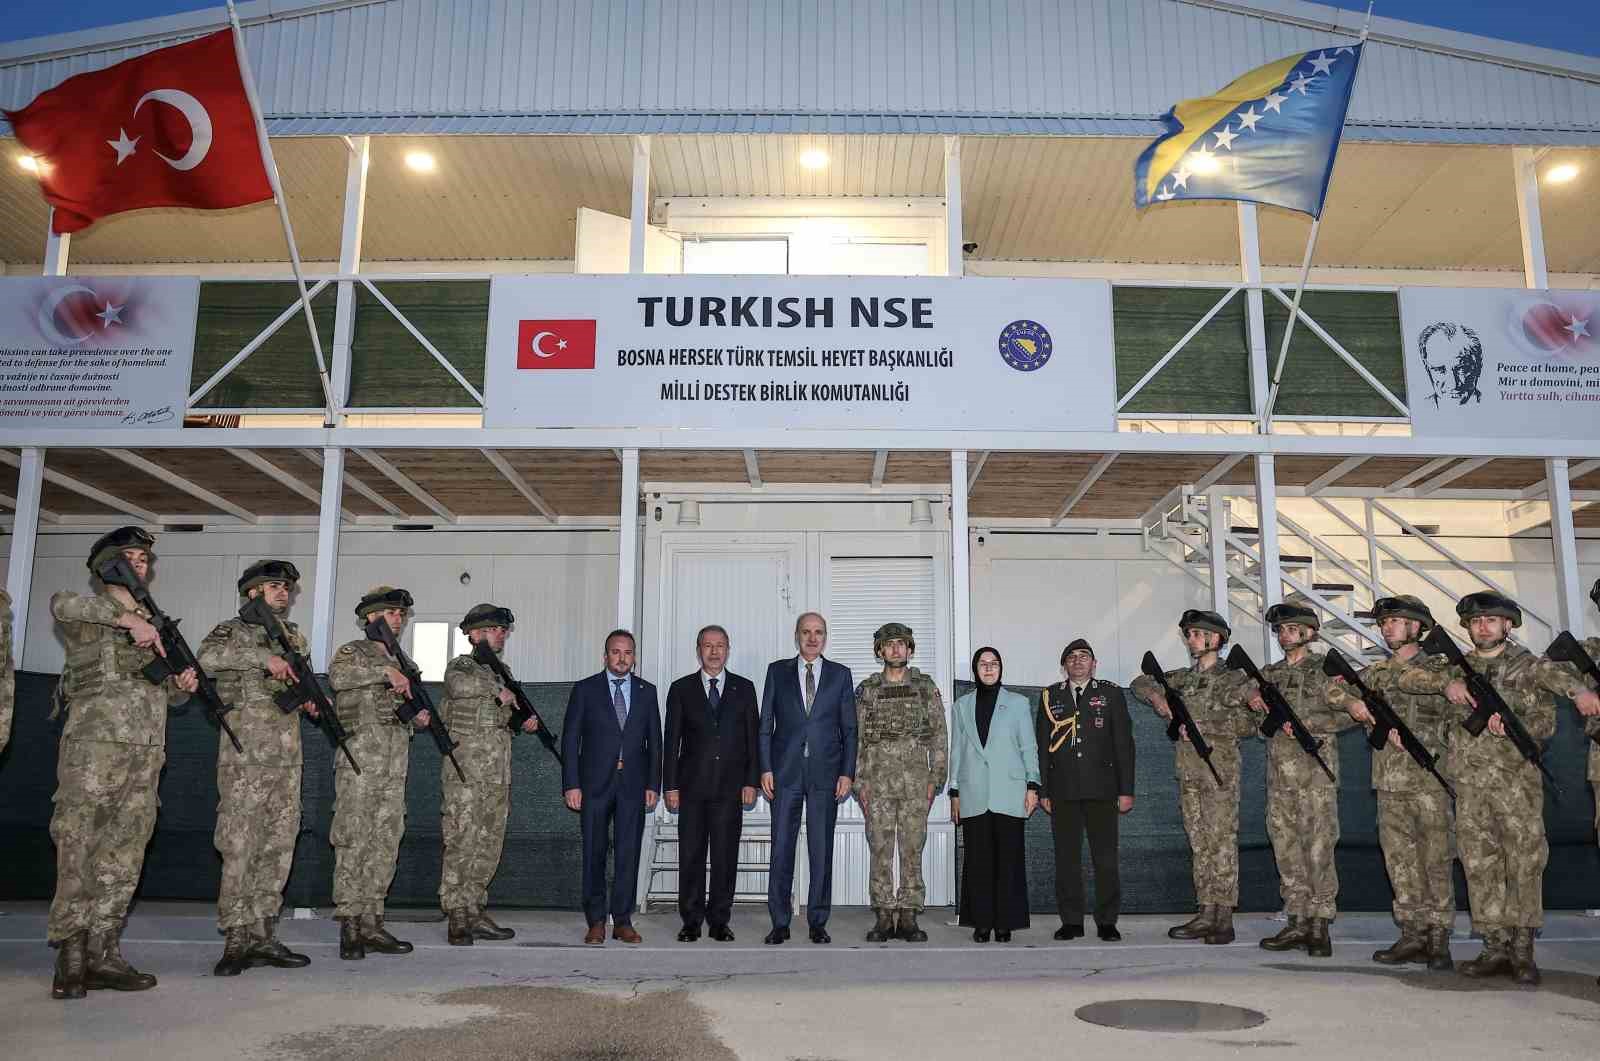 TBMM Başkanı Kurtulmuş, EUFOR Türk Temsil Heyeti Başkanlığını ziyaret etti